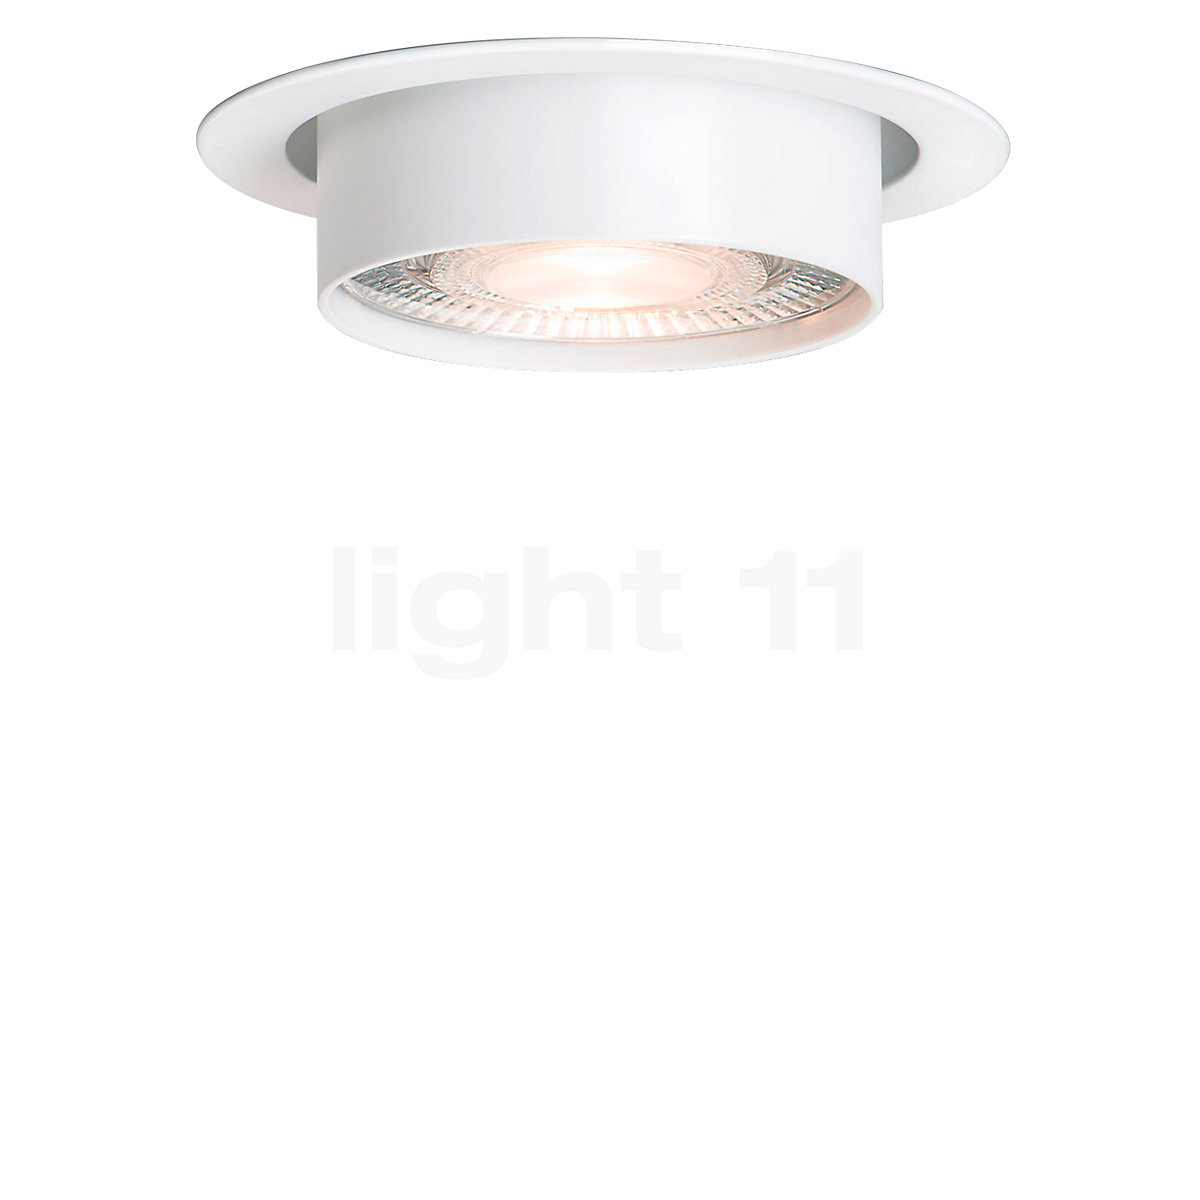 Lampe plafond LED à intensité réglable rond avec diffusion d